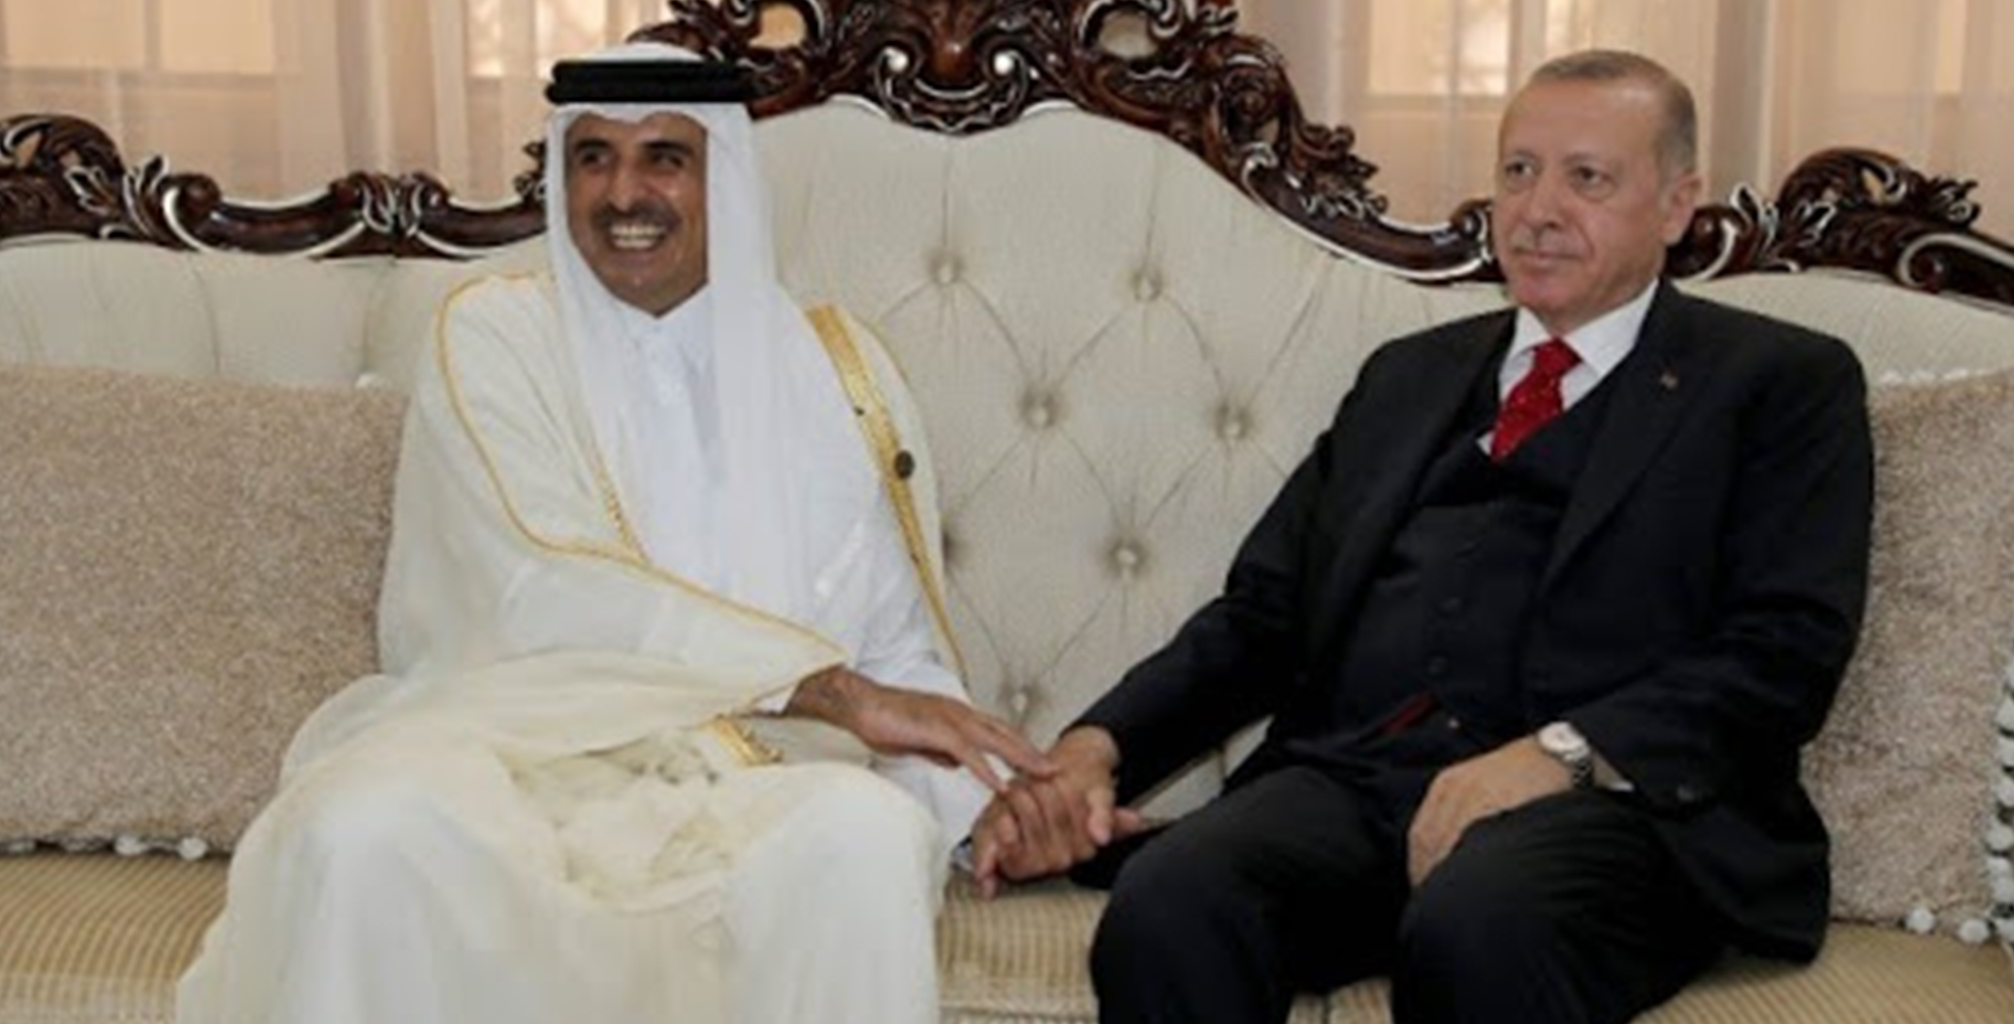 KOMÜNİSTLER DİYOR Kİ | AKP, Katar’ın yerli ve milli partisidir!